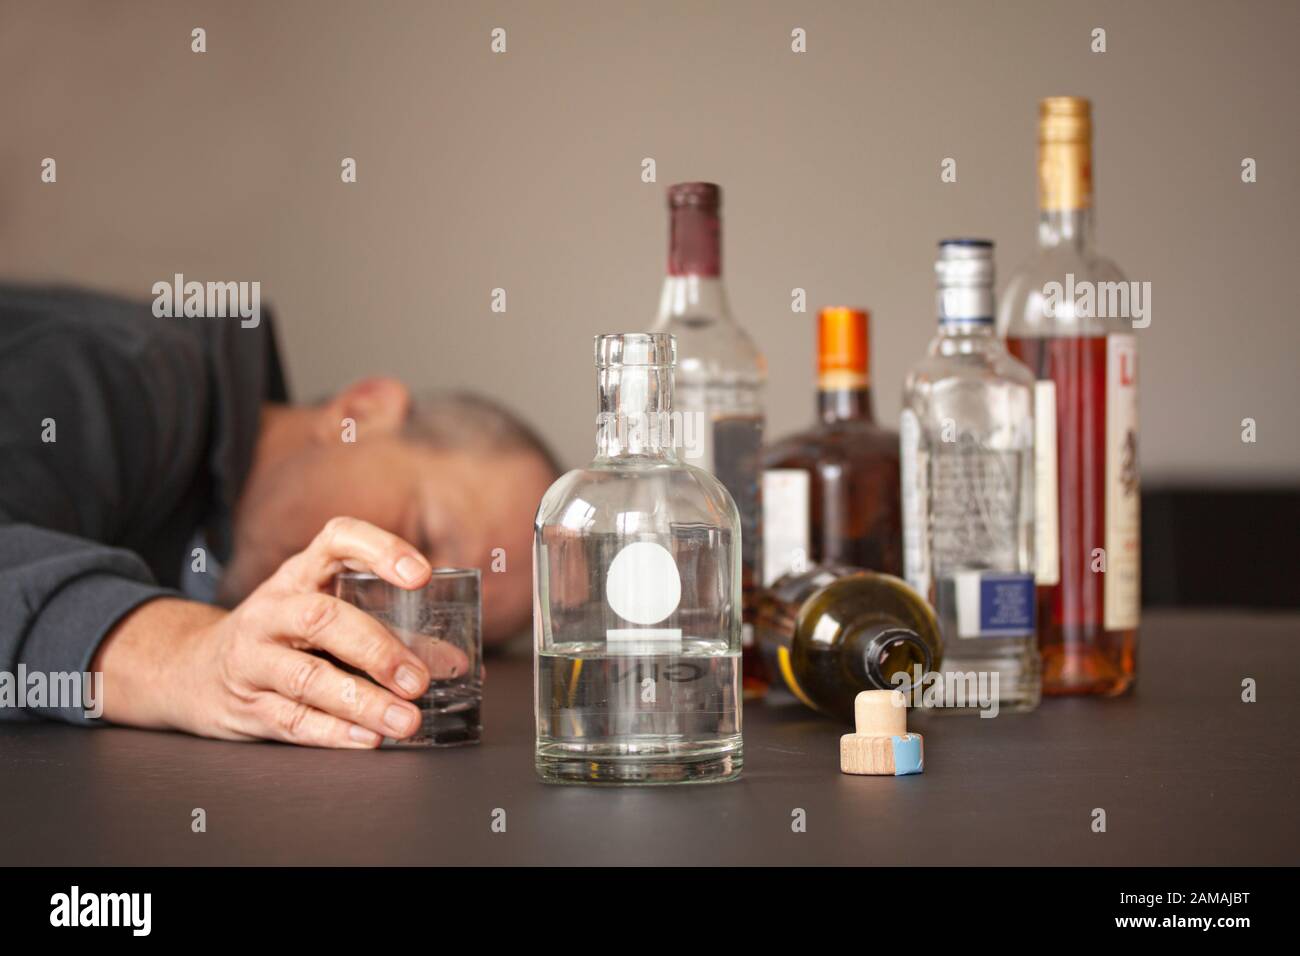 Организм после запоя. Алкоголизм. Люди с алкогольной зависимостью. Злоупотребление алкоголем.